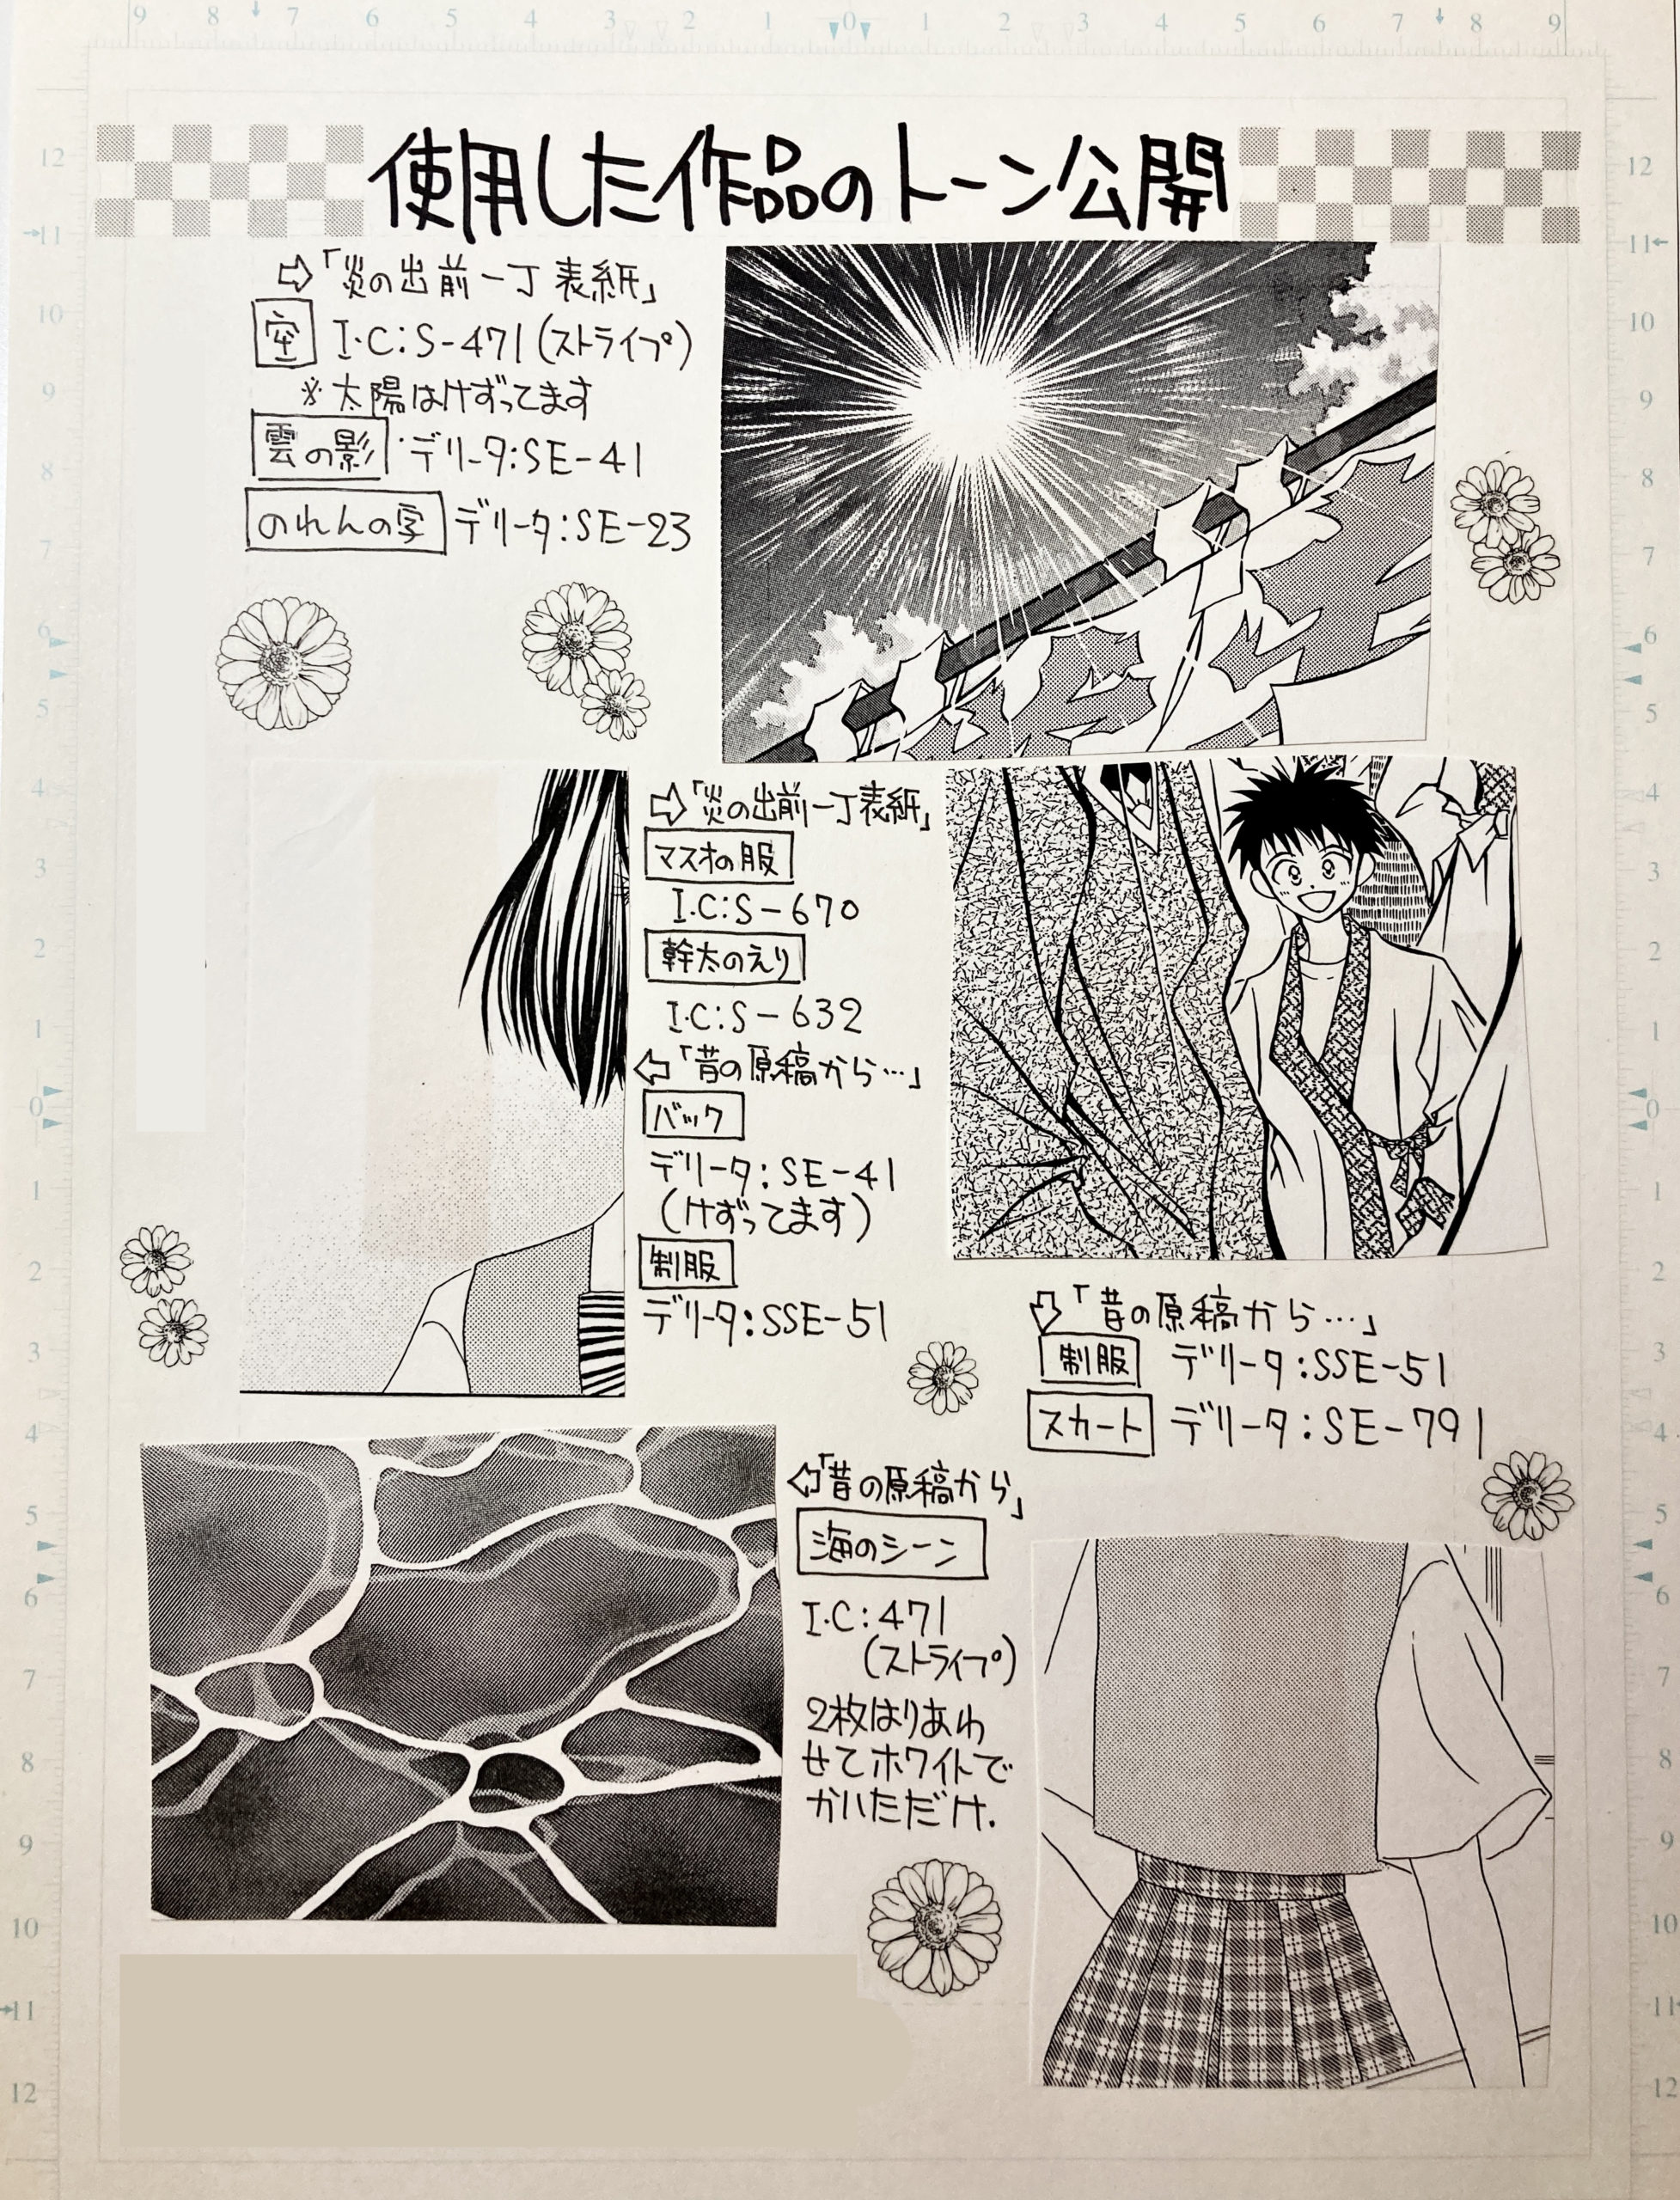 質問を受けたトーンの番号や服のシワの描き方を描いて読者へ送っていた昔 松元美智子クリエイティブブログ 公式